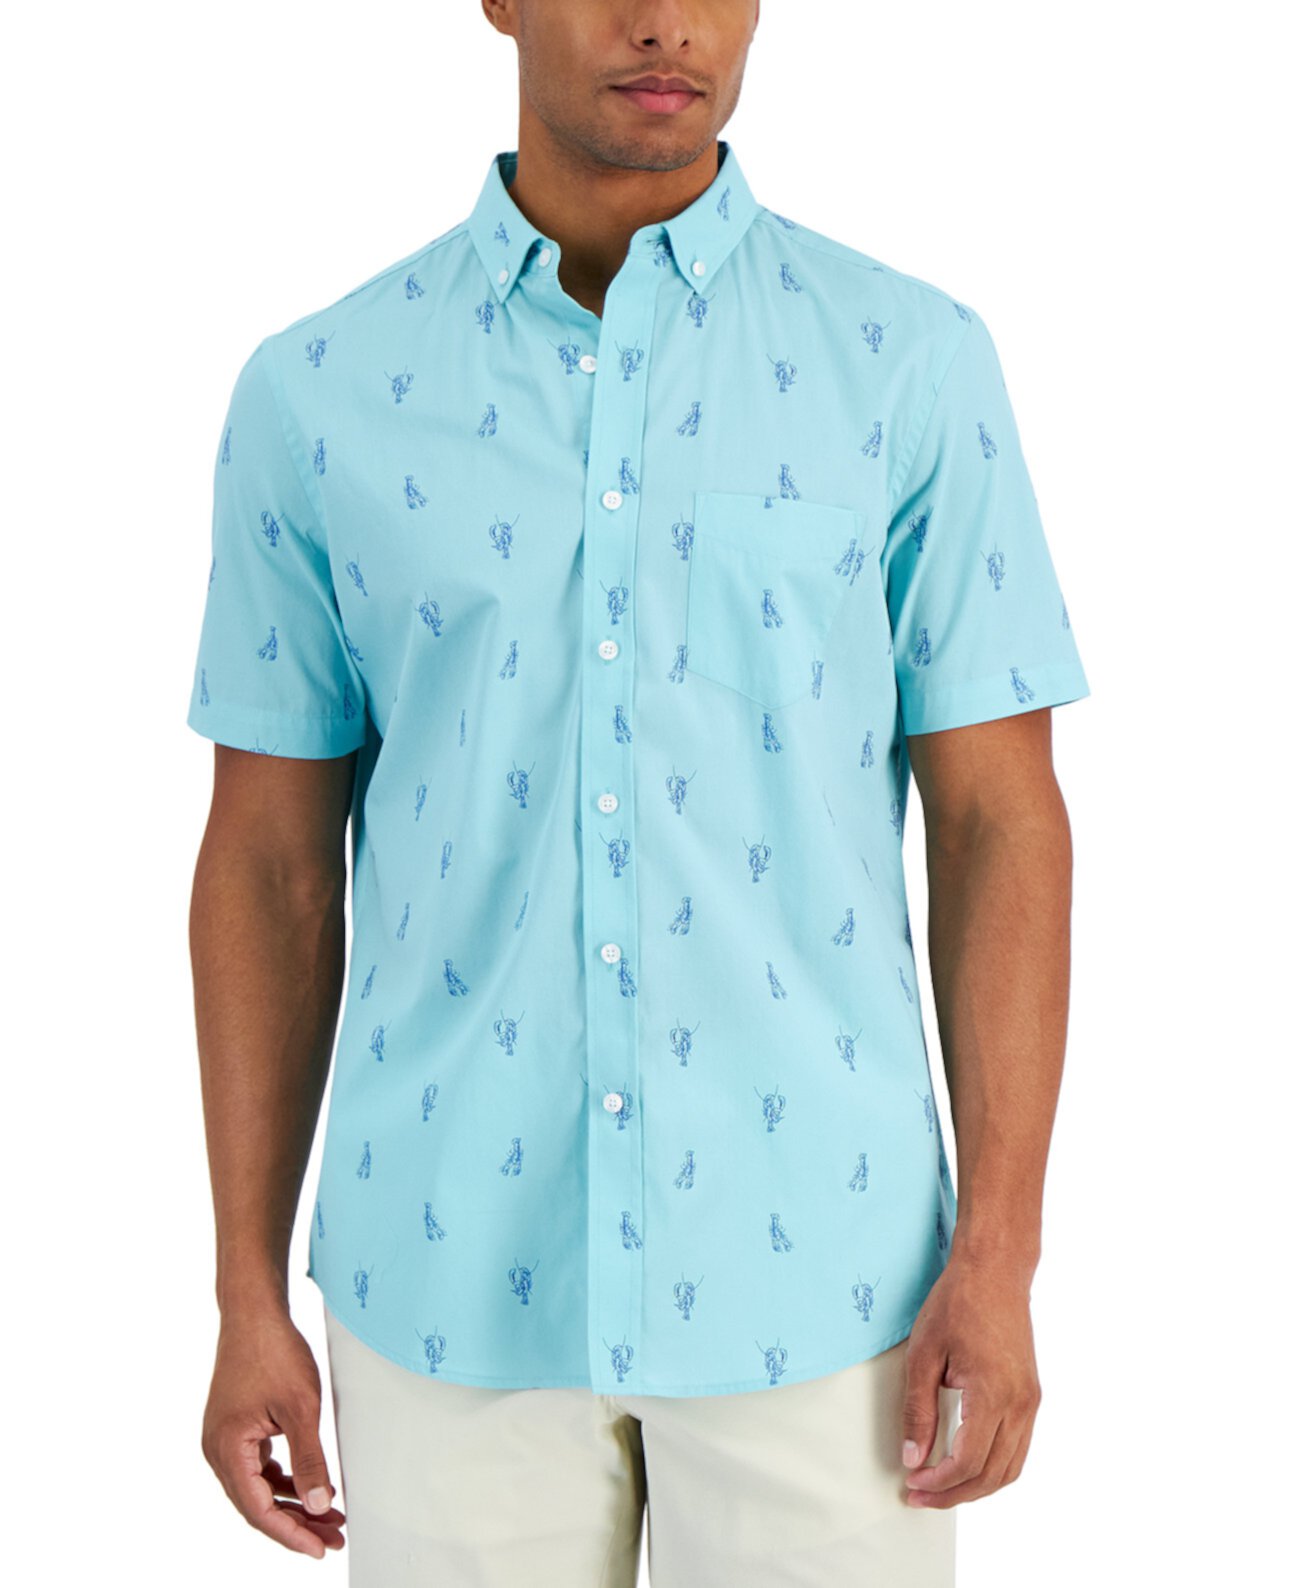 Мужская рубашка из поплина с принтом лобстера, созданная для Macy's Club Room